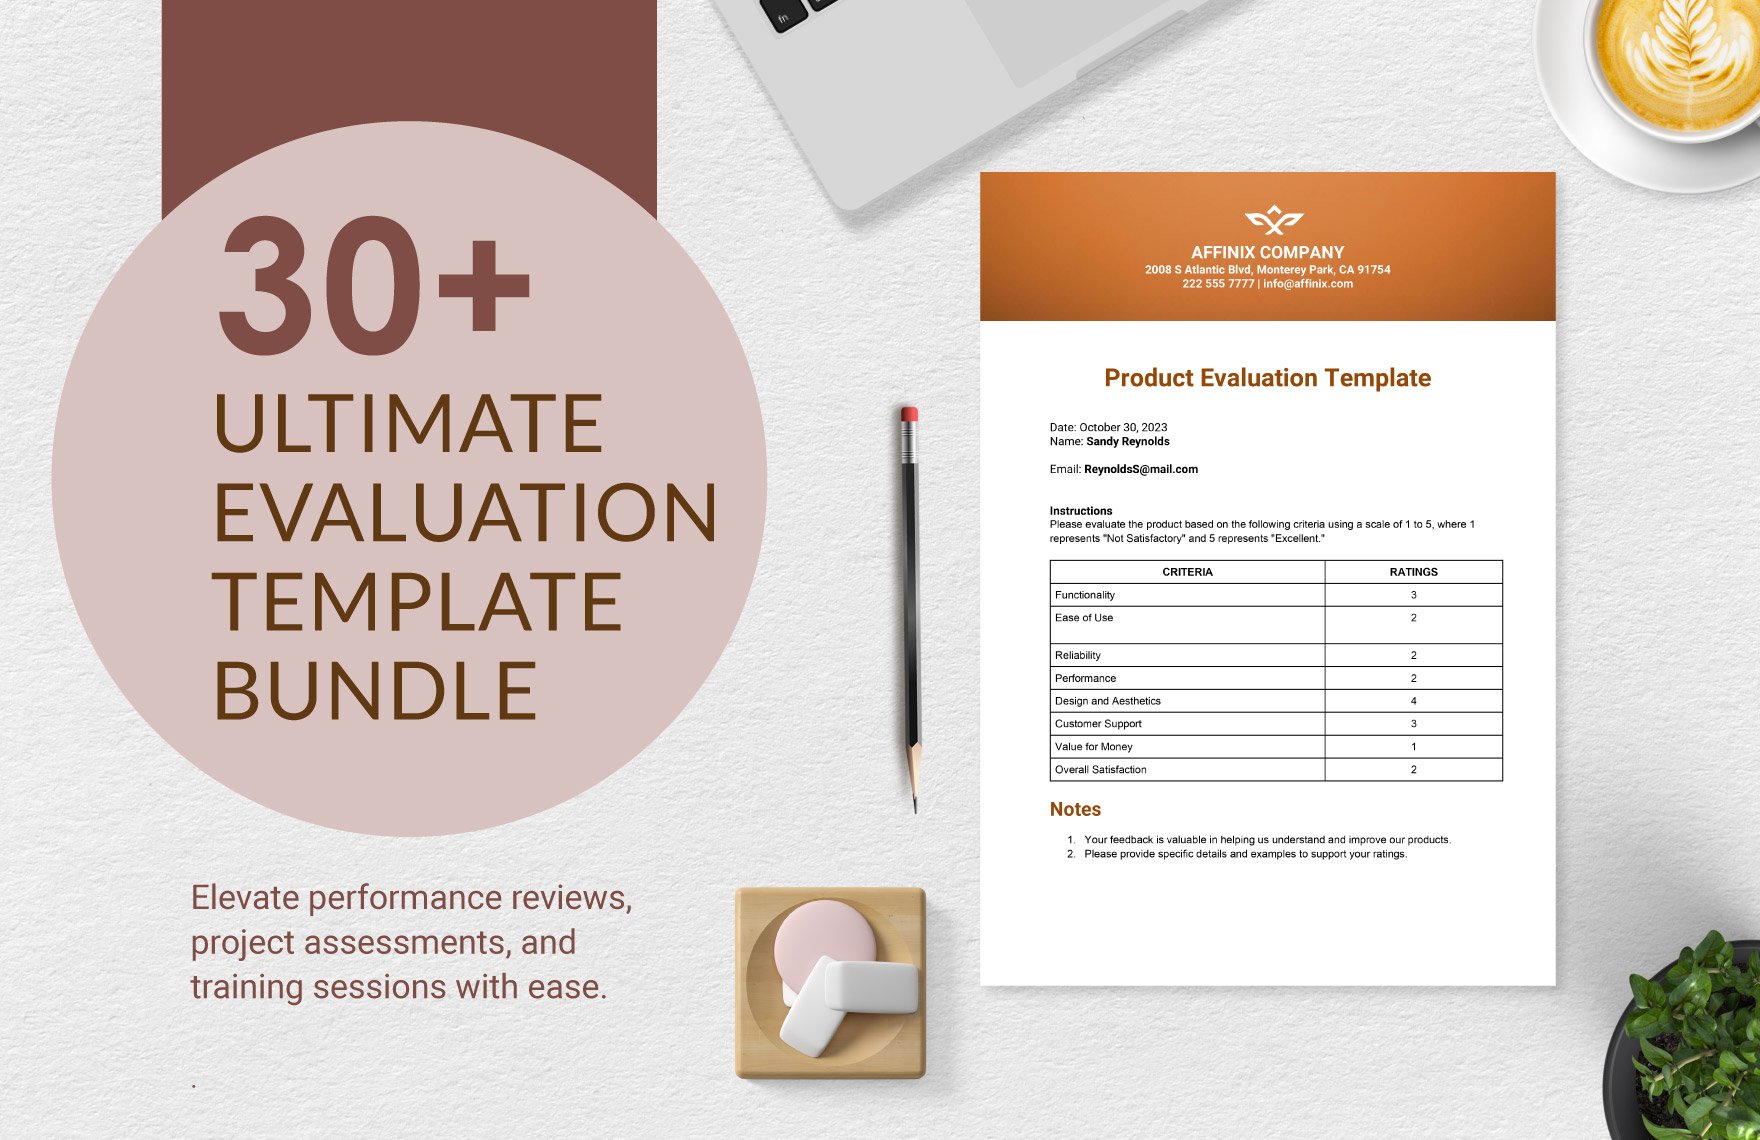 30+ Ultimate Evaluation Template Bundle